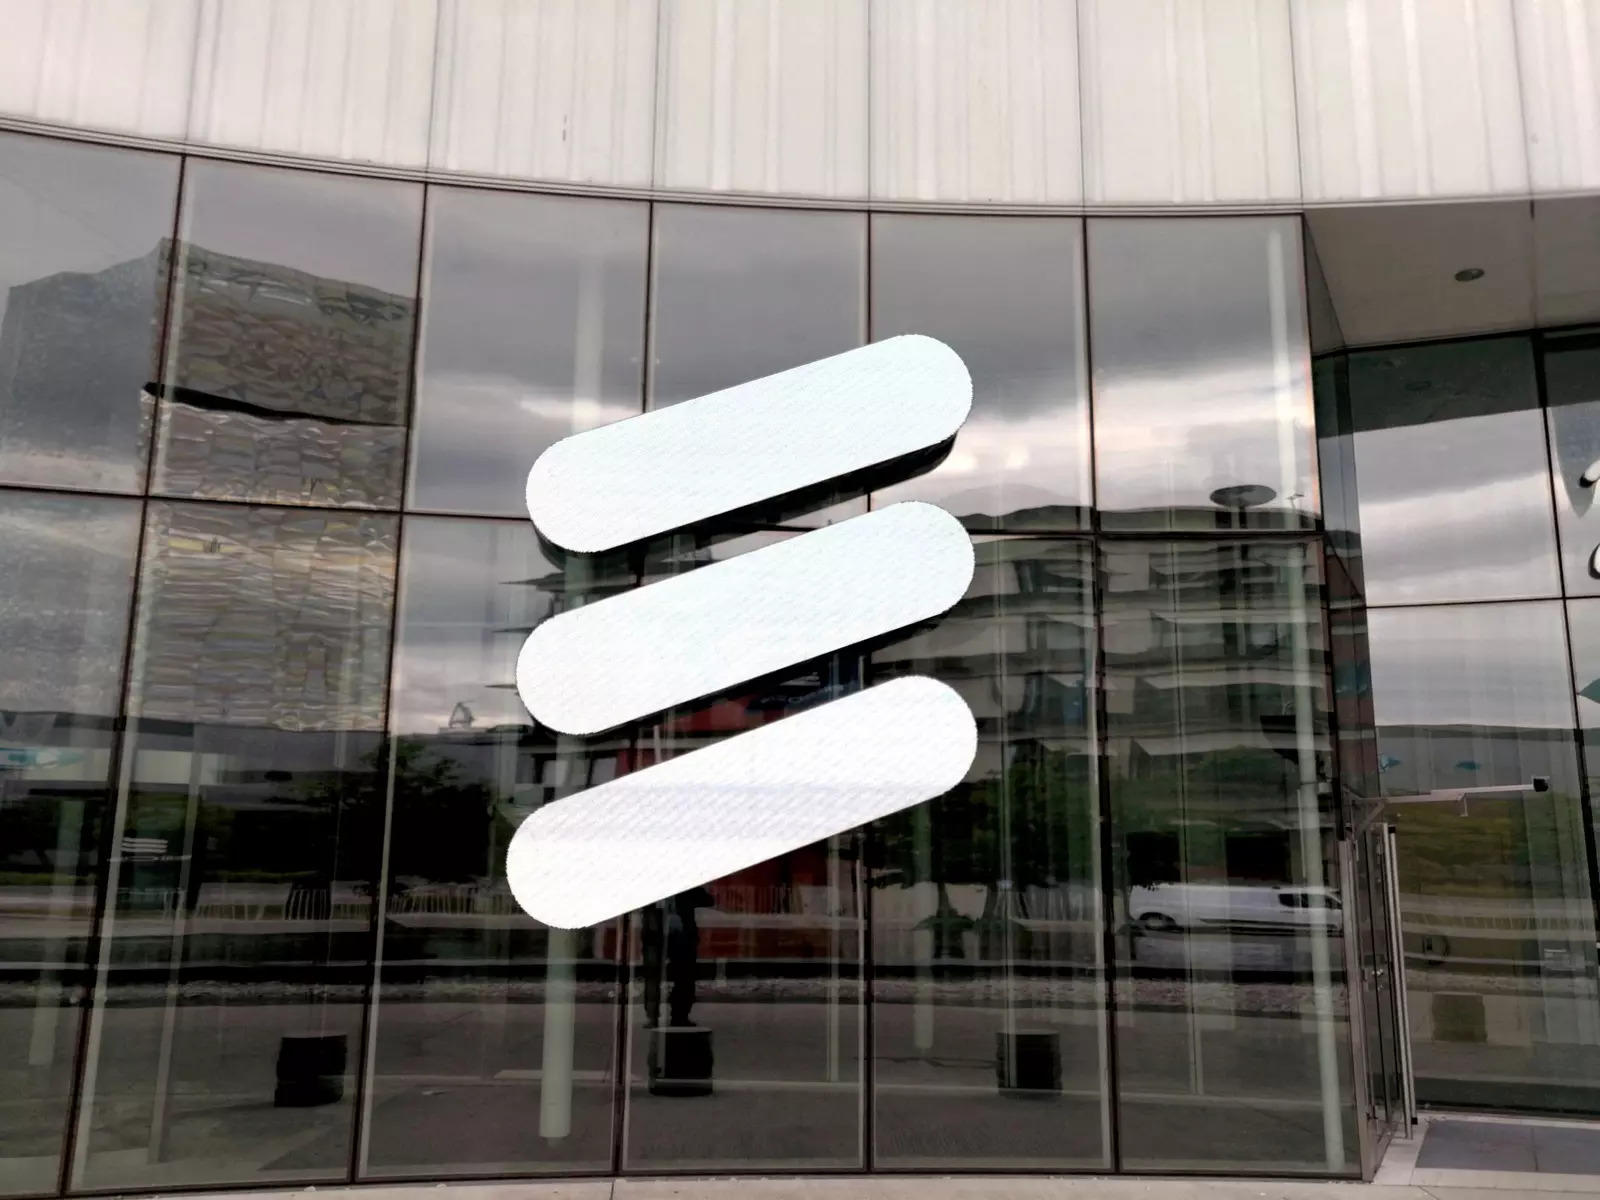 Ericsson's quarterly core profit misses estimates on rising costs